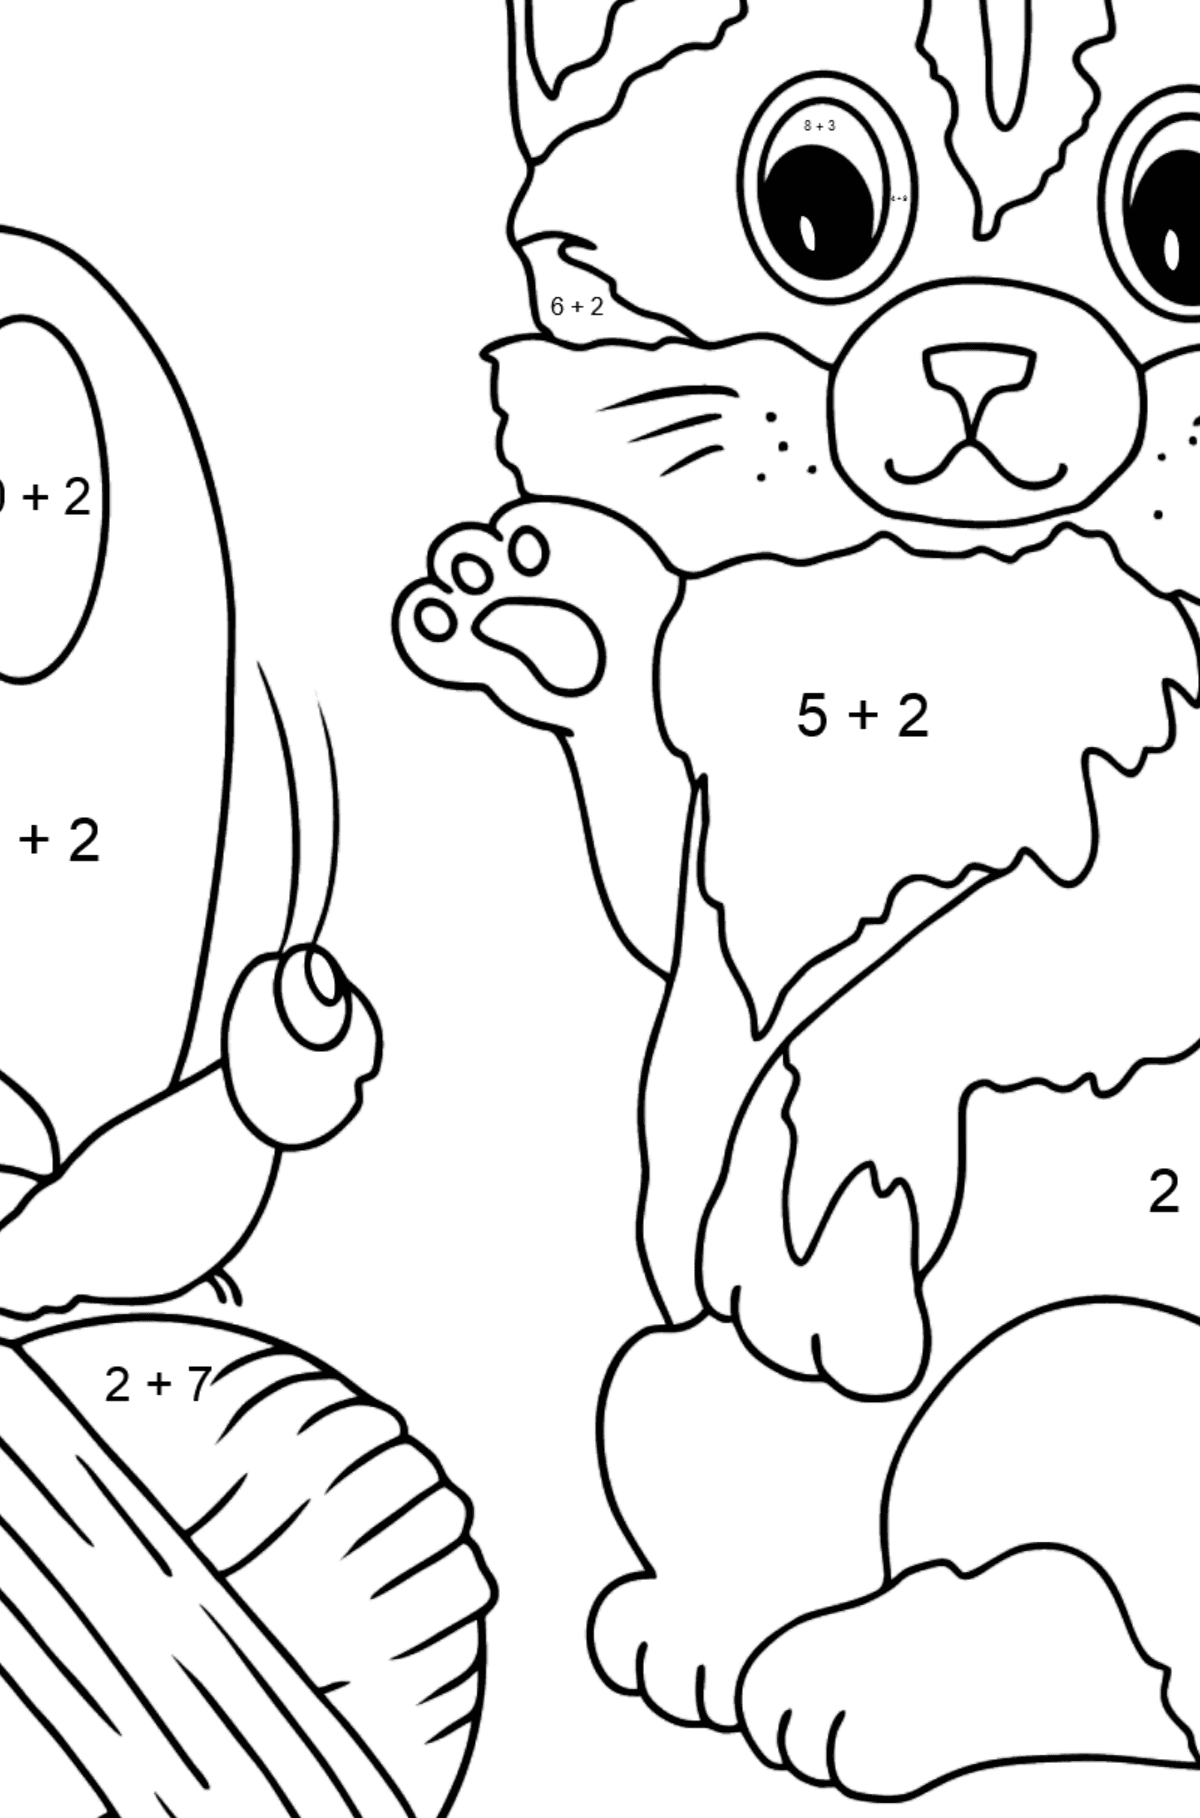 Disegno da colorare di gattino - Colorazione matematica - Addizione per bambini